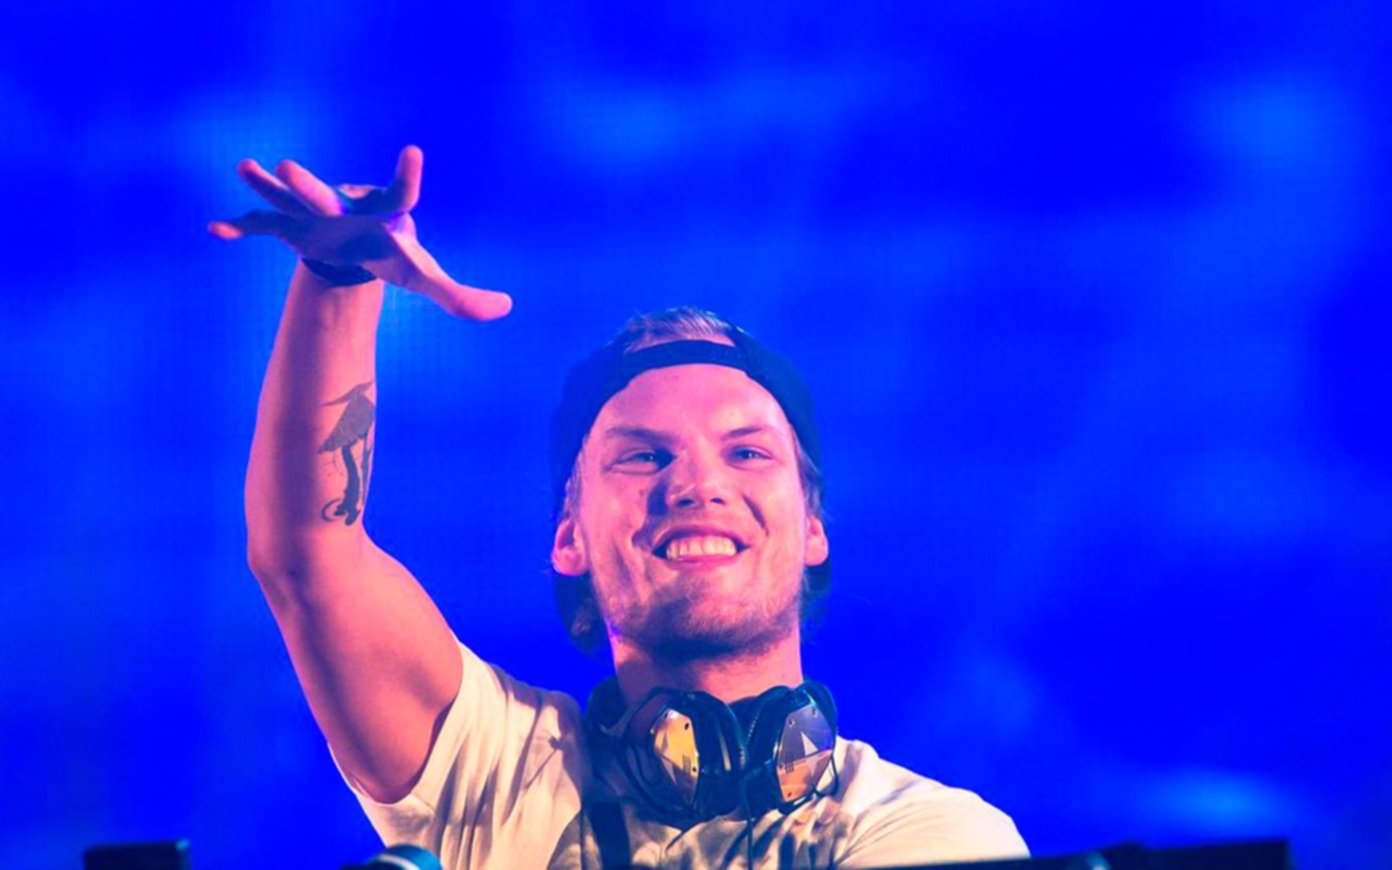  La familia del DJ Avicii emitió un comunicado  y alimentó los rumores de suicidio